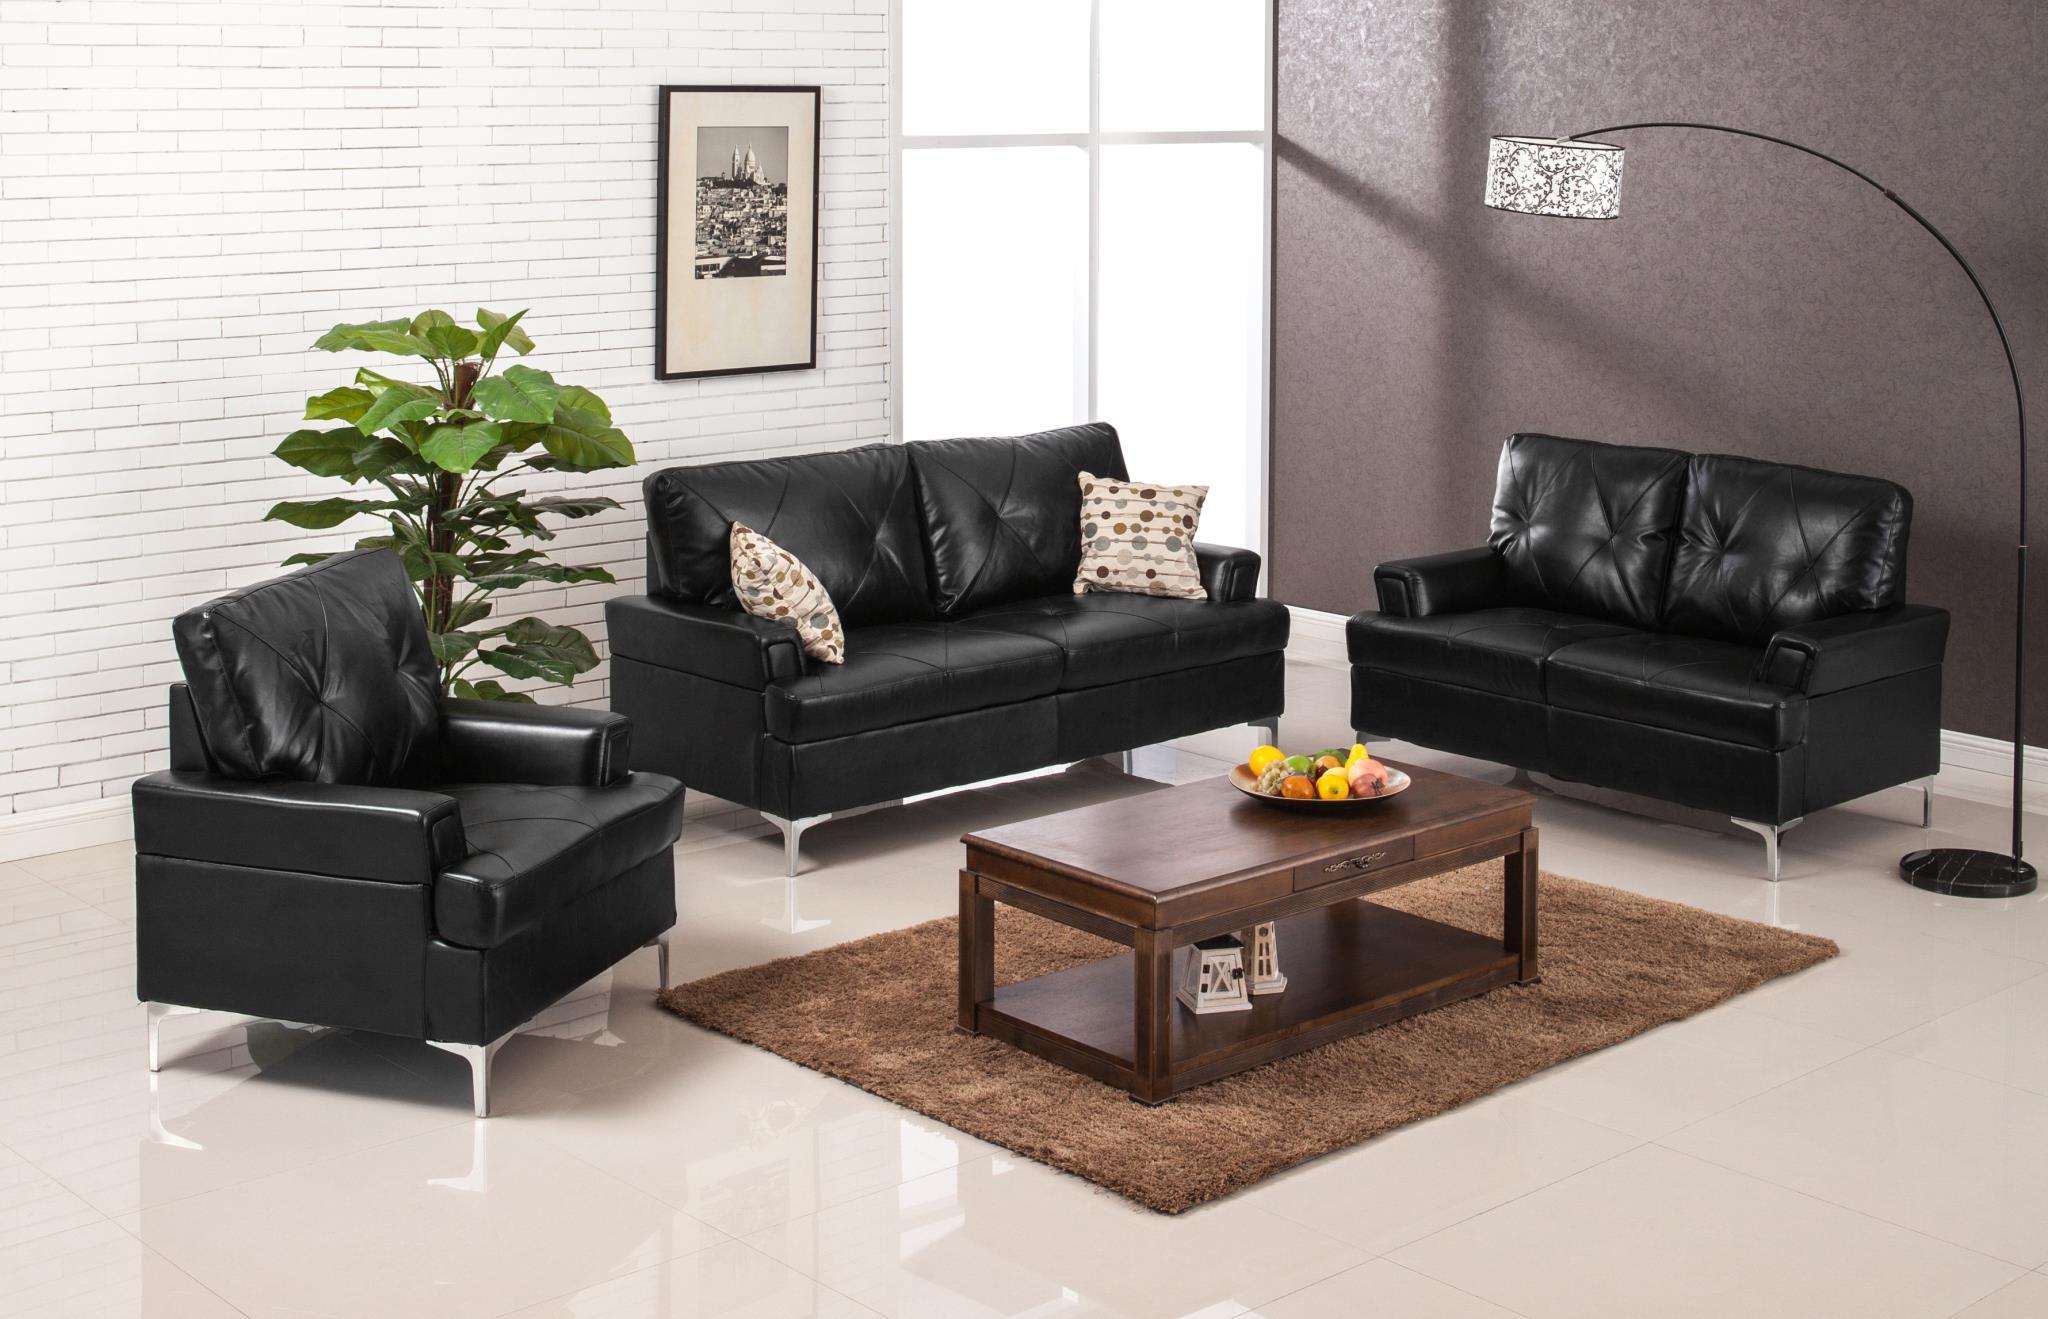 

    
MYCO Furniture Walker Modern Black Bonded Leather Living Room Sofa Set 3 Pcs
